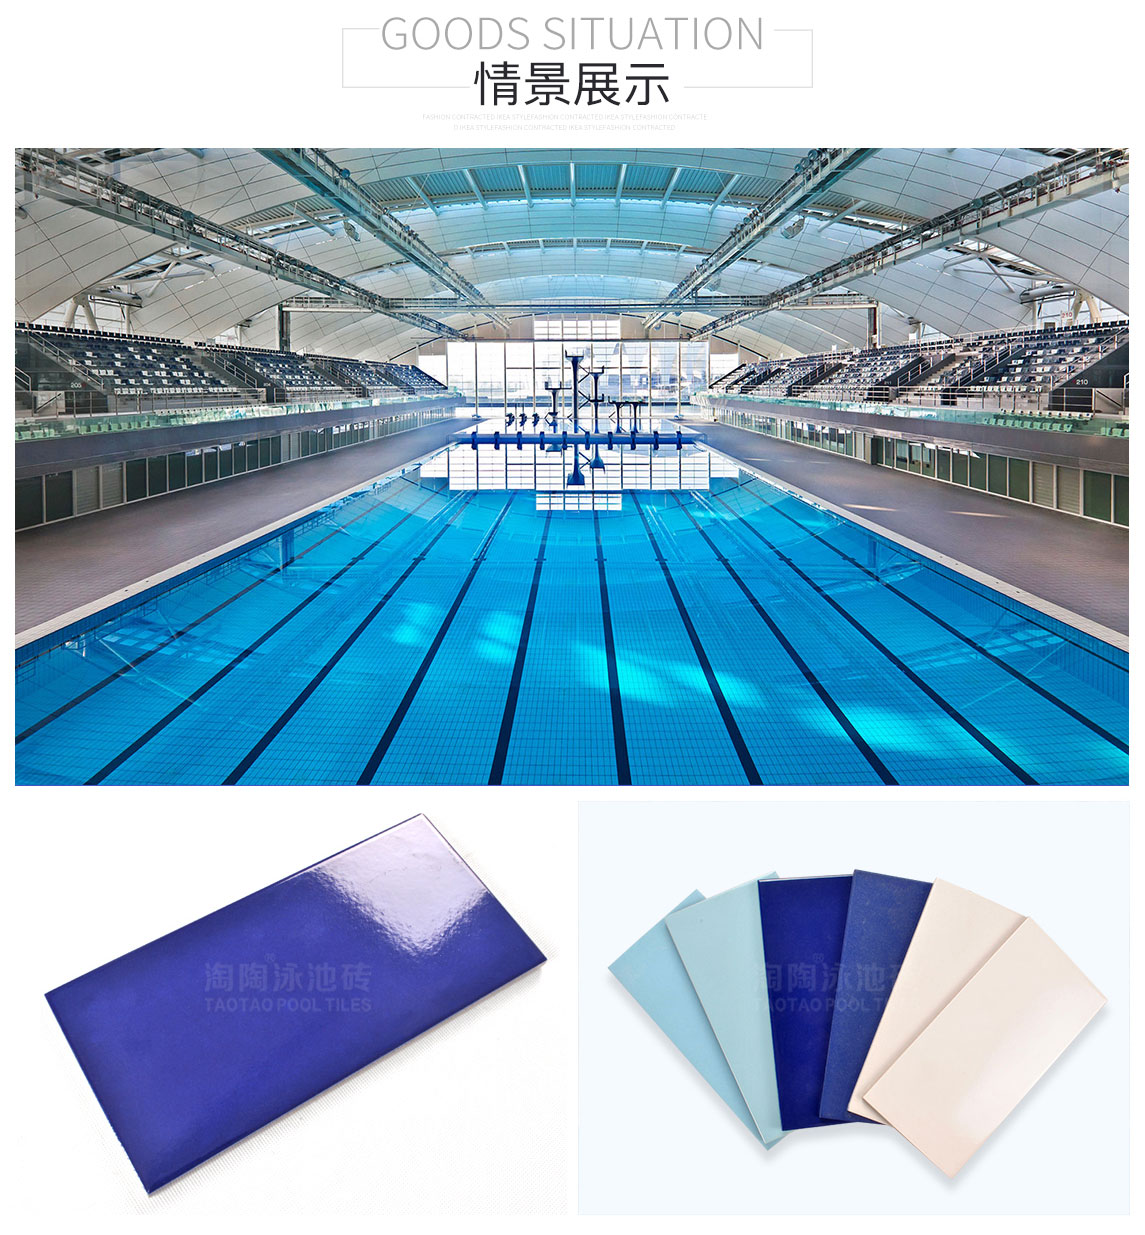 泳池瓷砖应用于泳道标志线的色调搭配